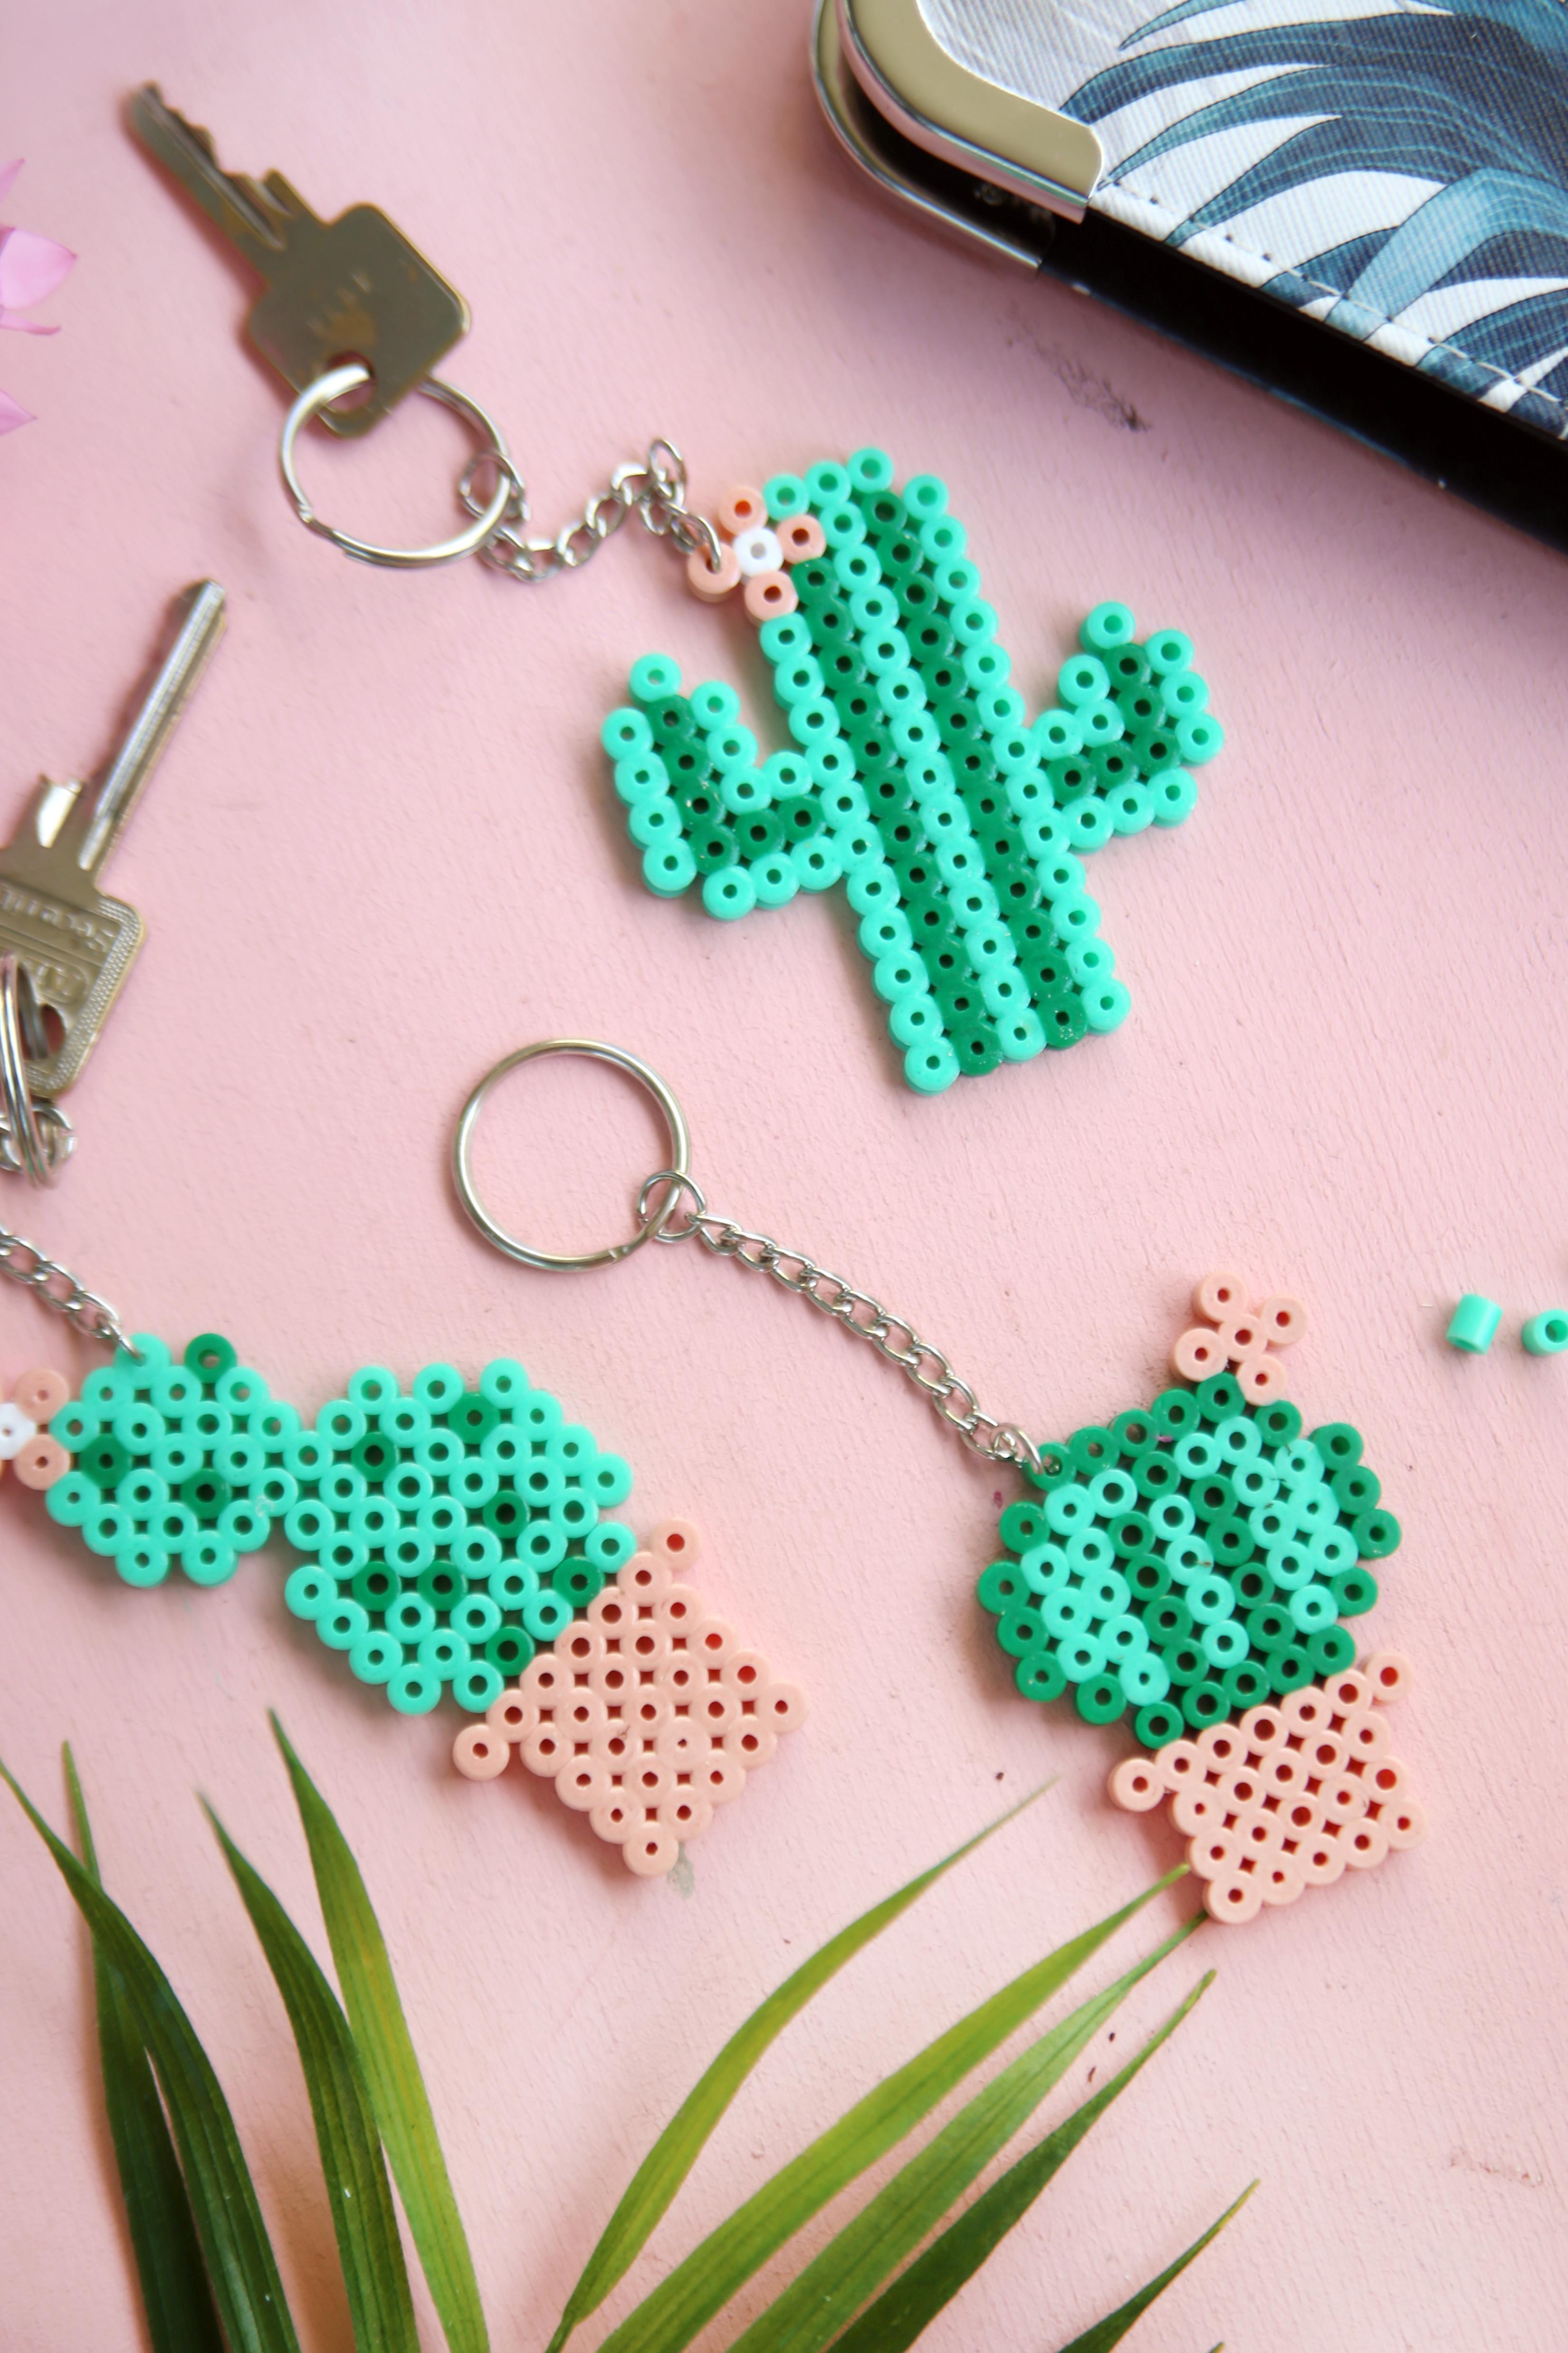 Kaktus-Schlüsselanhänger aus Bügelperlen selbstgemacht :) #schlüsselanhänger #diy #kaktus #bügelperlen